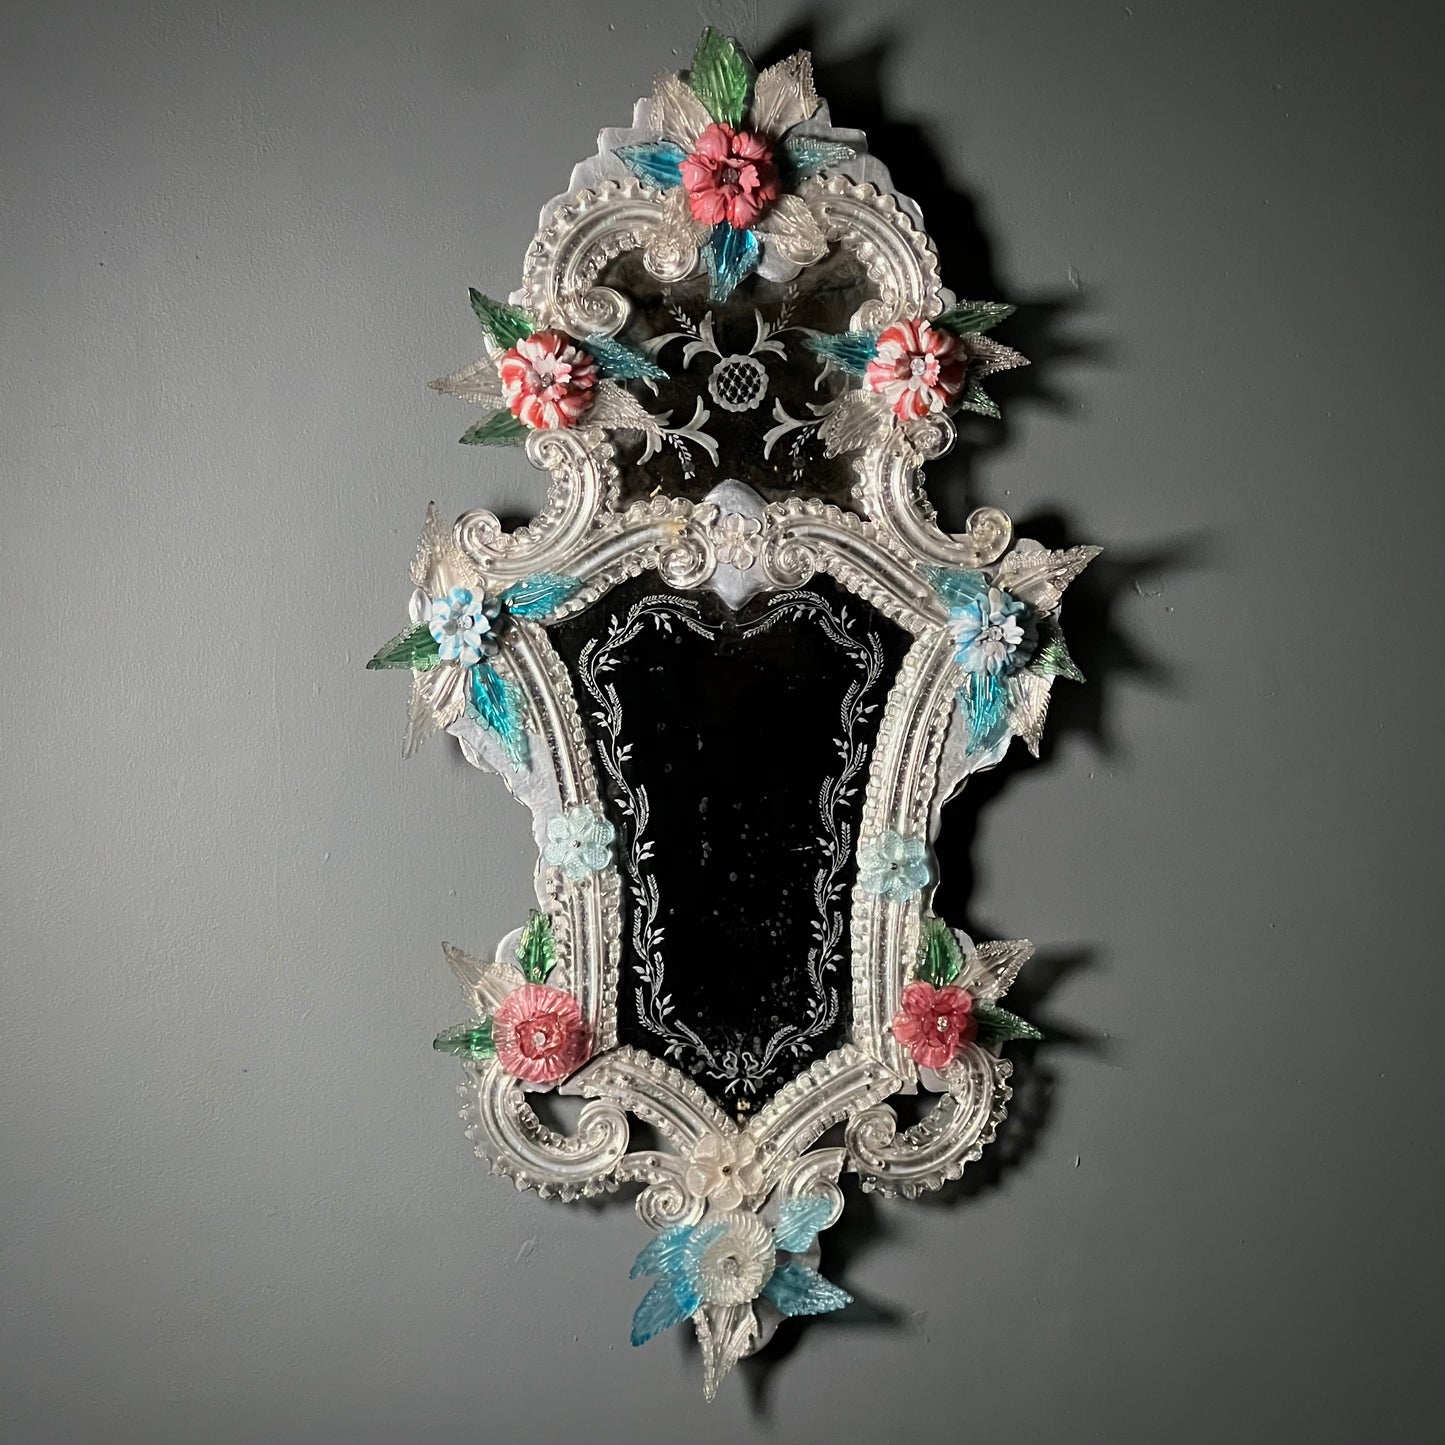 Pair of Italian Venetian Murano Glass Mirrors Early 20th Century